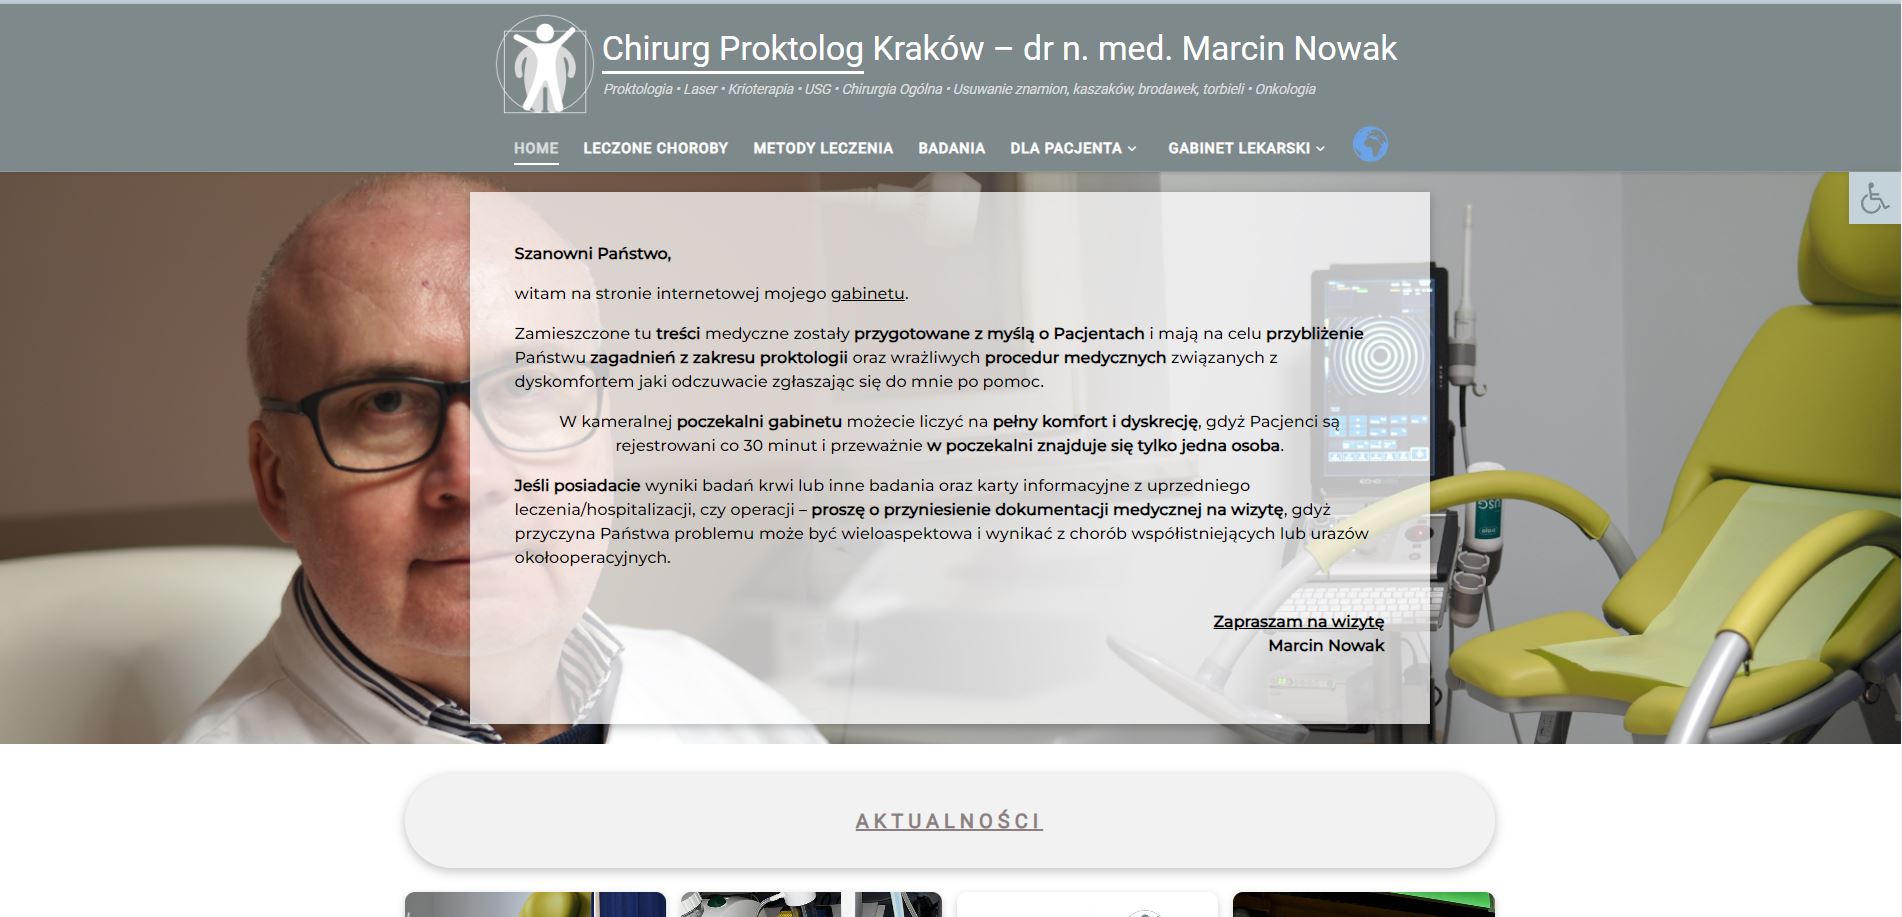 Chirurg Proktolog Kraków – dr n. med. Marcin Nowak